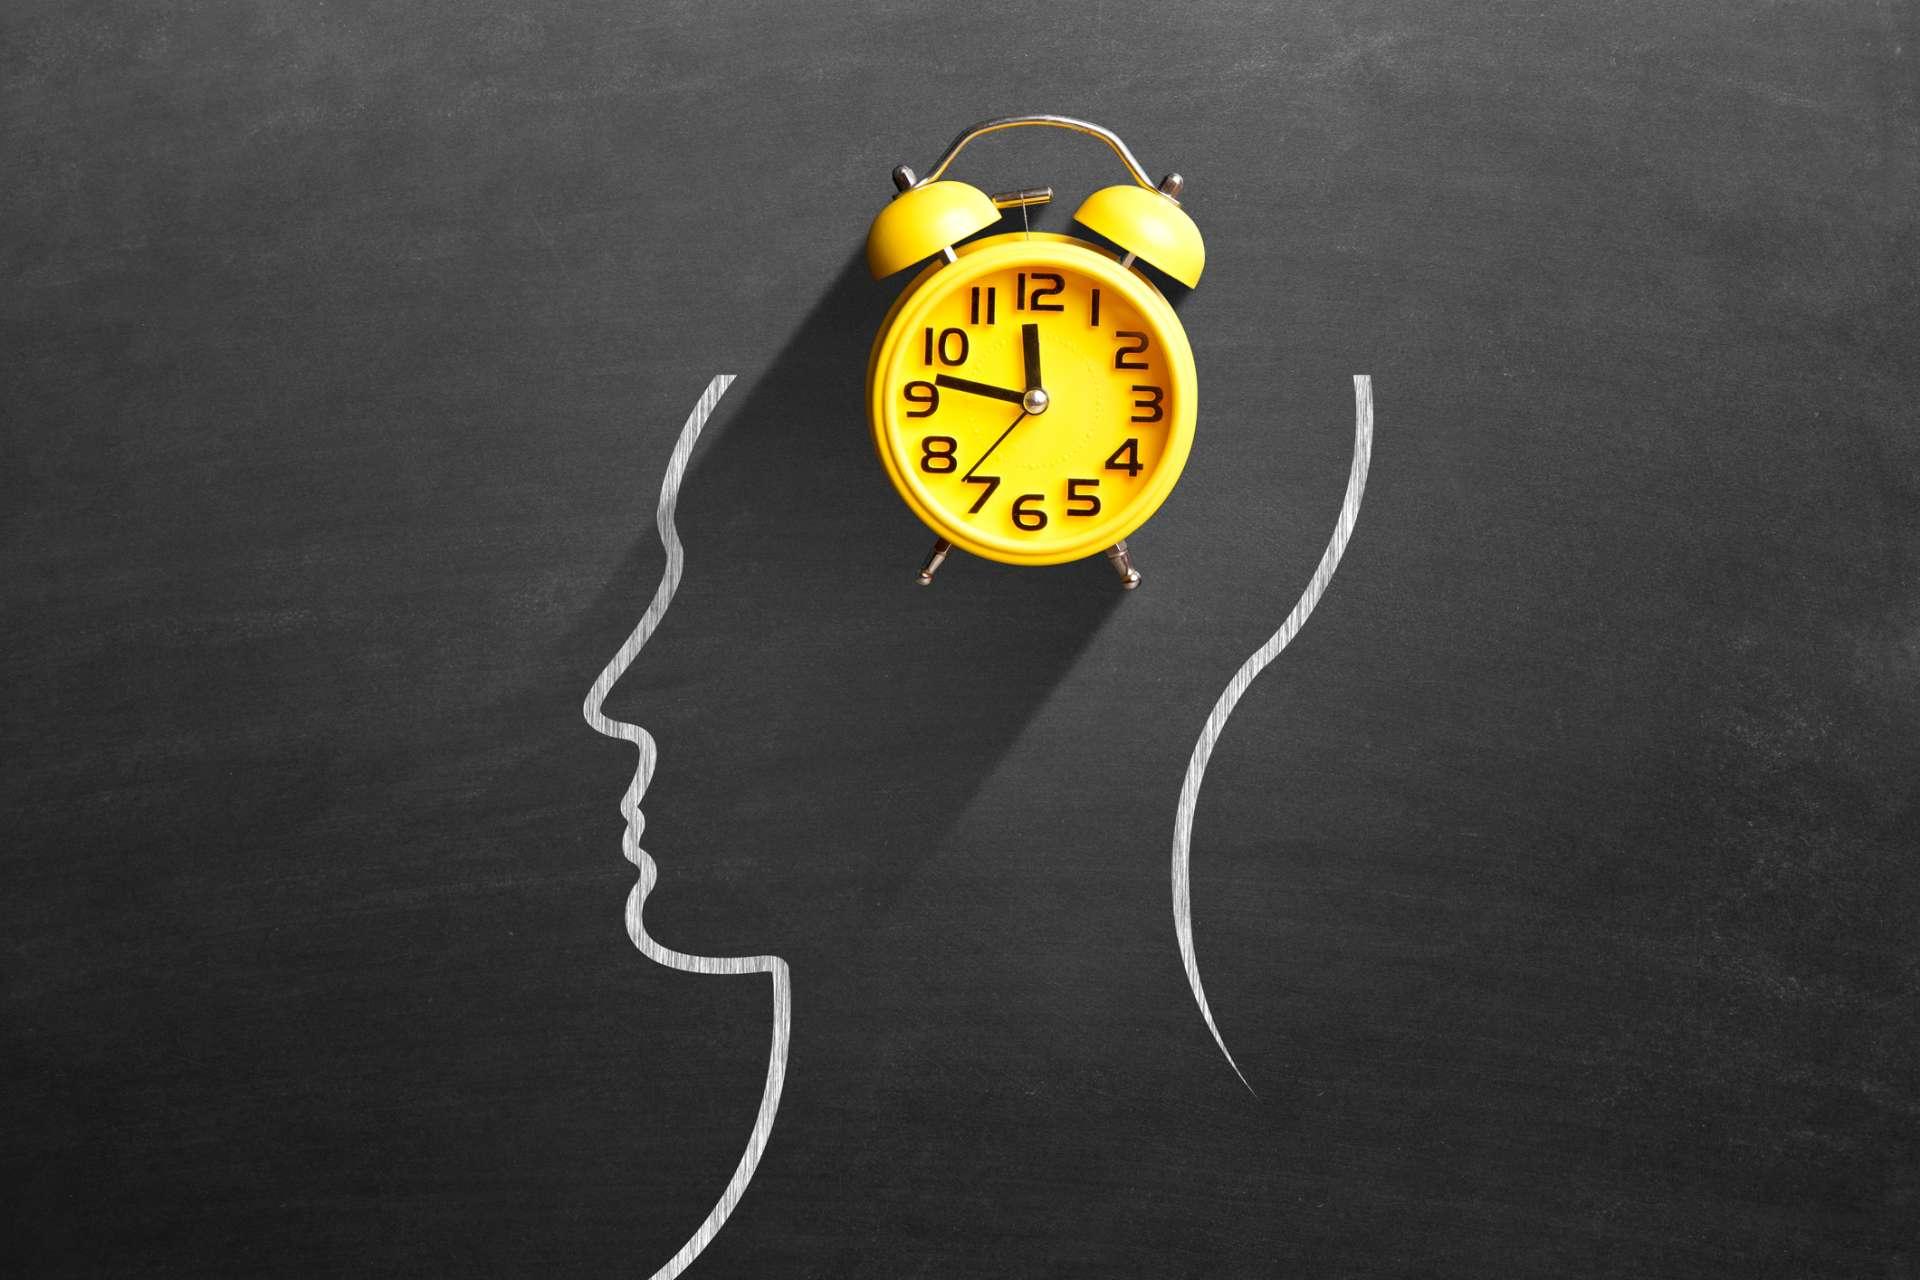 Gelber Wecker vor dem menschlichen Gehirn auf der Tafel, der das Konzept des Zeitmanagements darstellt.